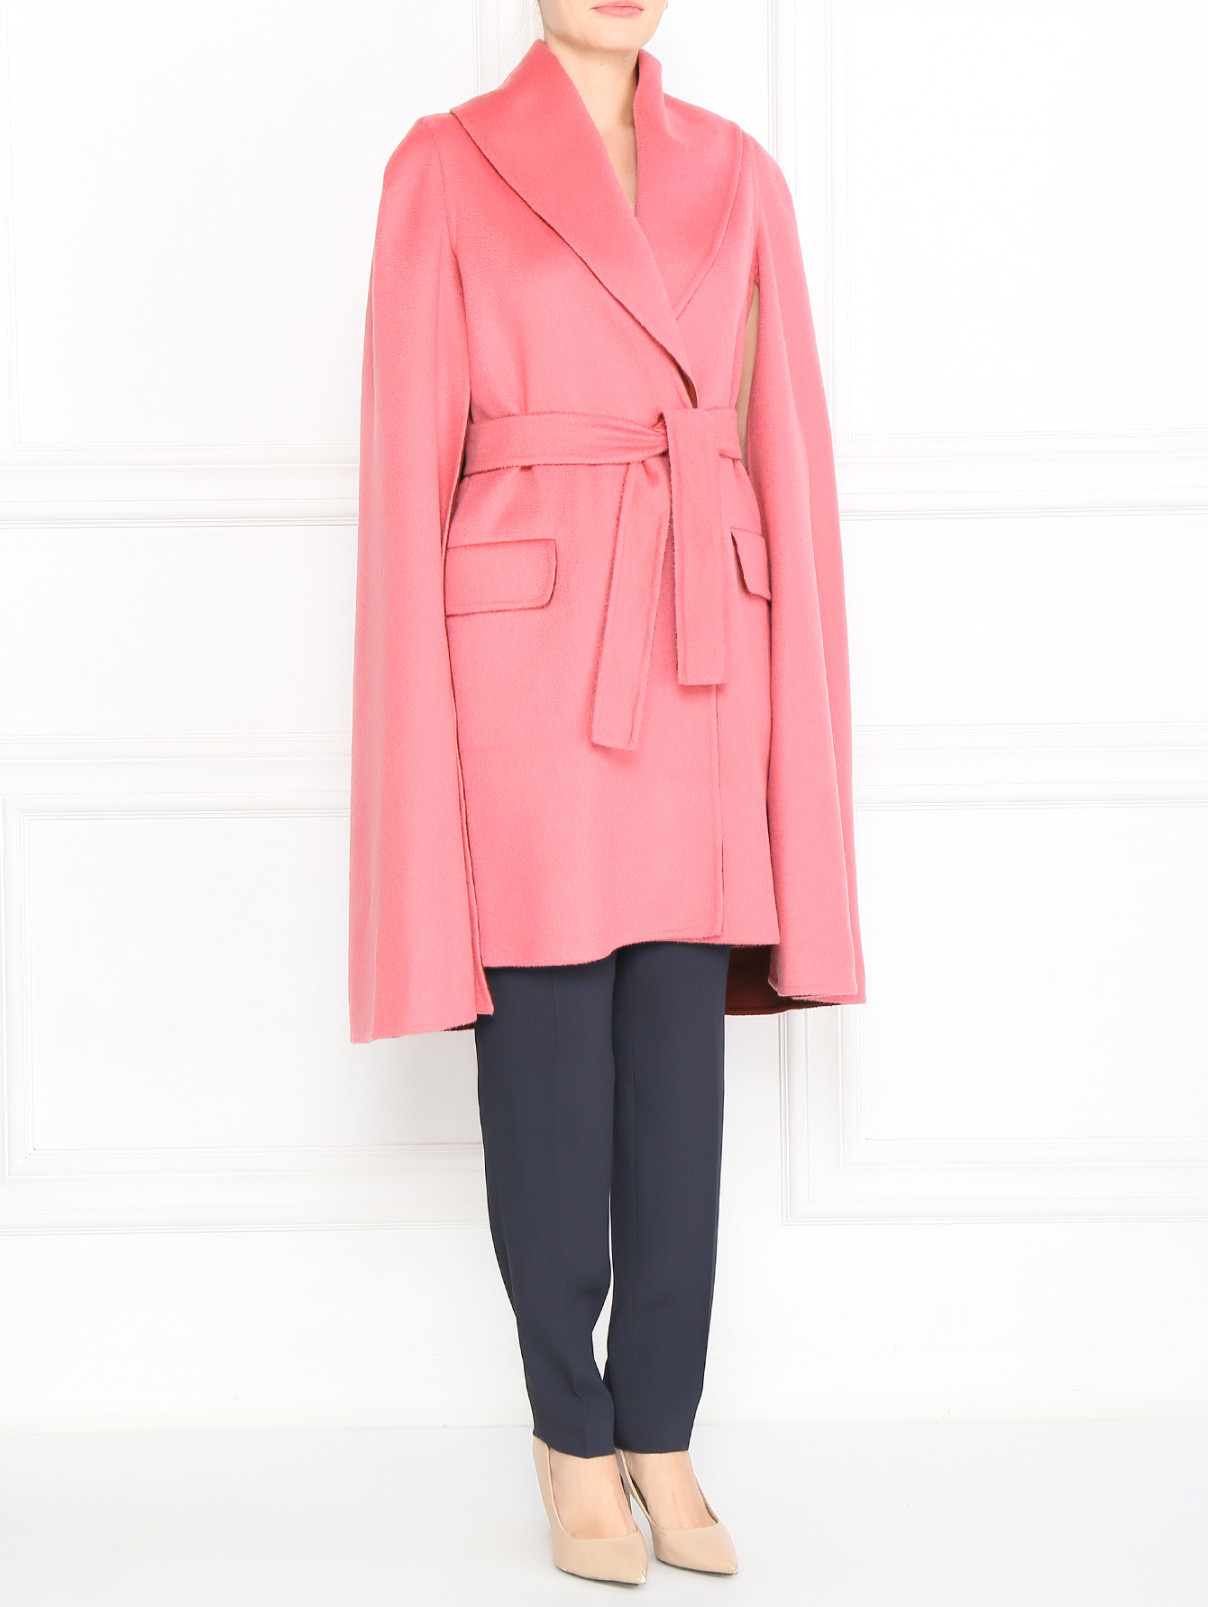 Пальто c разрезами по бокам Max Mara  –  Модель Общий вид  – Цвет:  Розовый